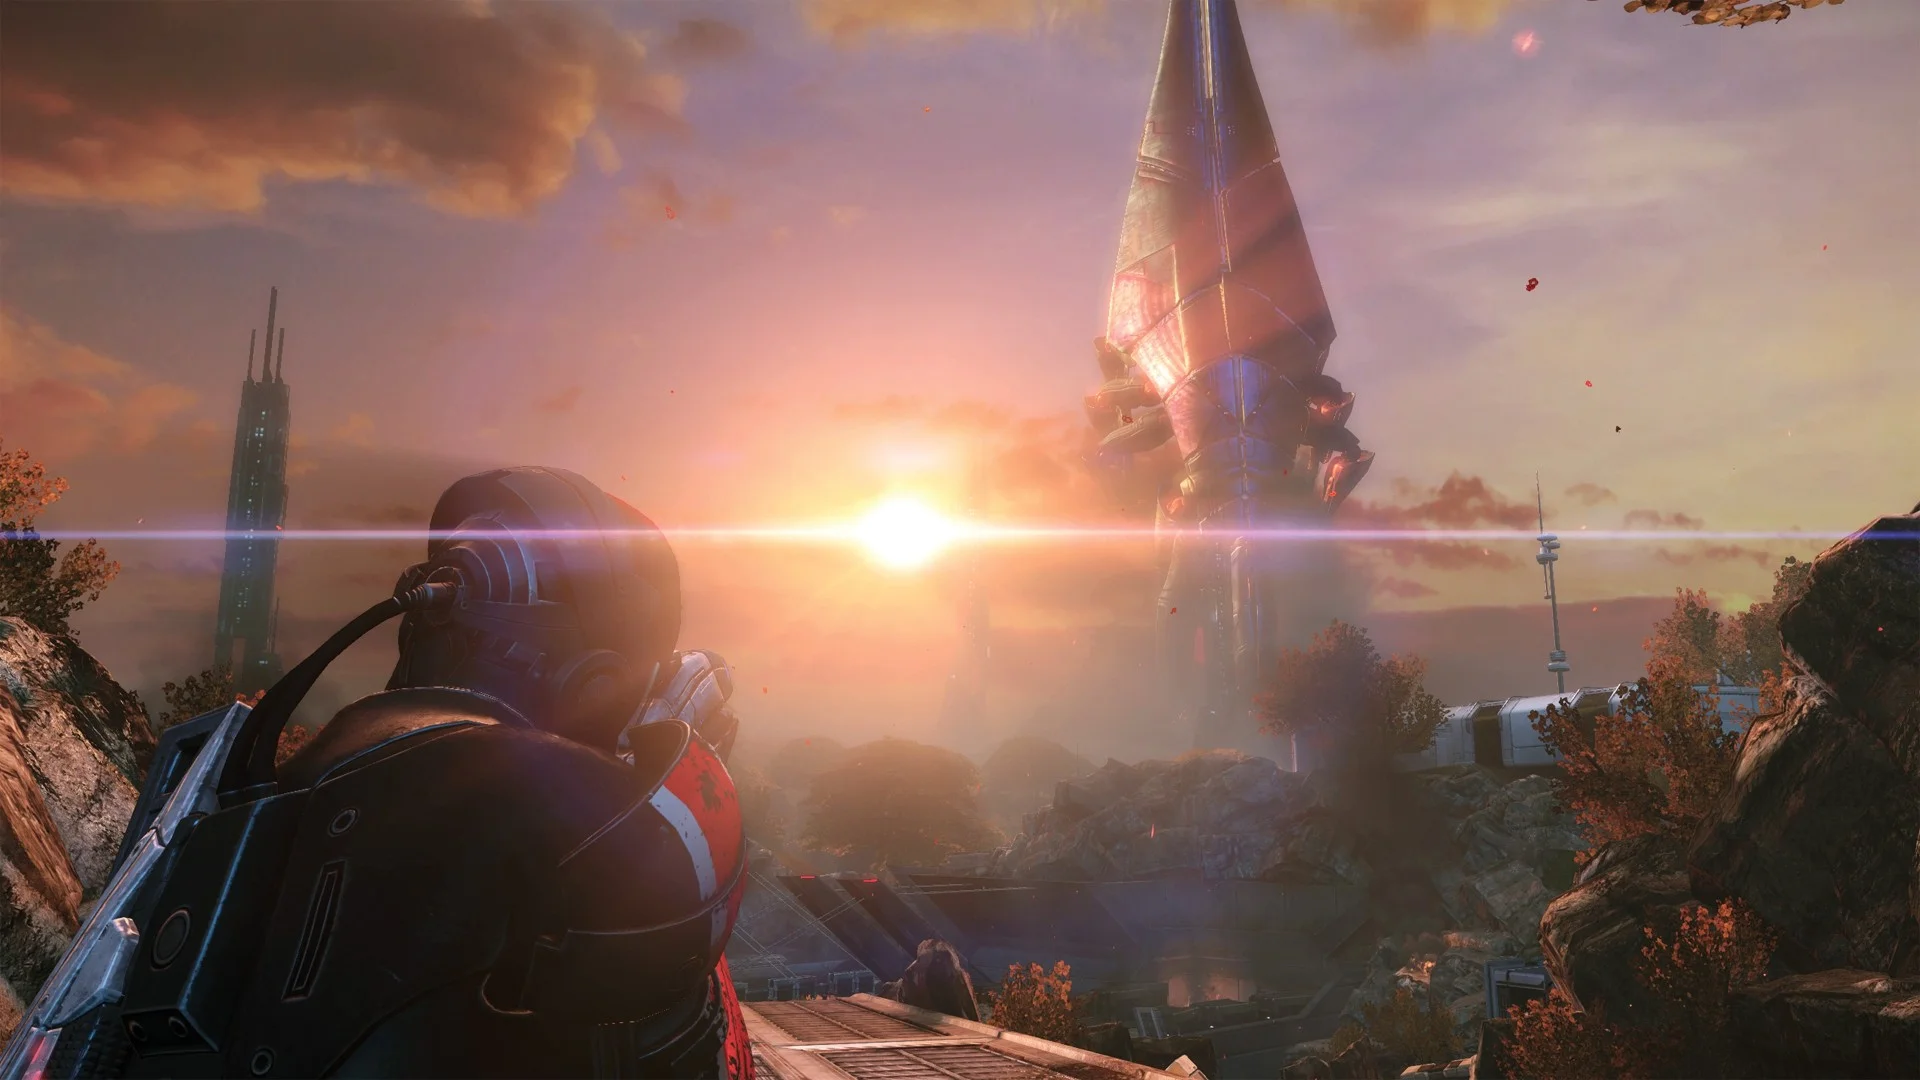 14 мая выйдет Mass Effect: Legendary Edition — сборник, куда вошли очень ожидаемые ремастеры трех частей популярной фантастической RPG-серии. Доступ к комплекту у меня появился всего за пару дней до релиза, и оценить все игры не было времени. По этой причине я сосредоточился на первой части — именно её переработали сильнее всего. Ниже — впечатления от обновленной версии игры, которой в 2021 году исполнится 14 лет.